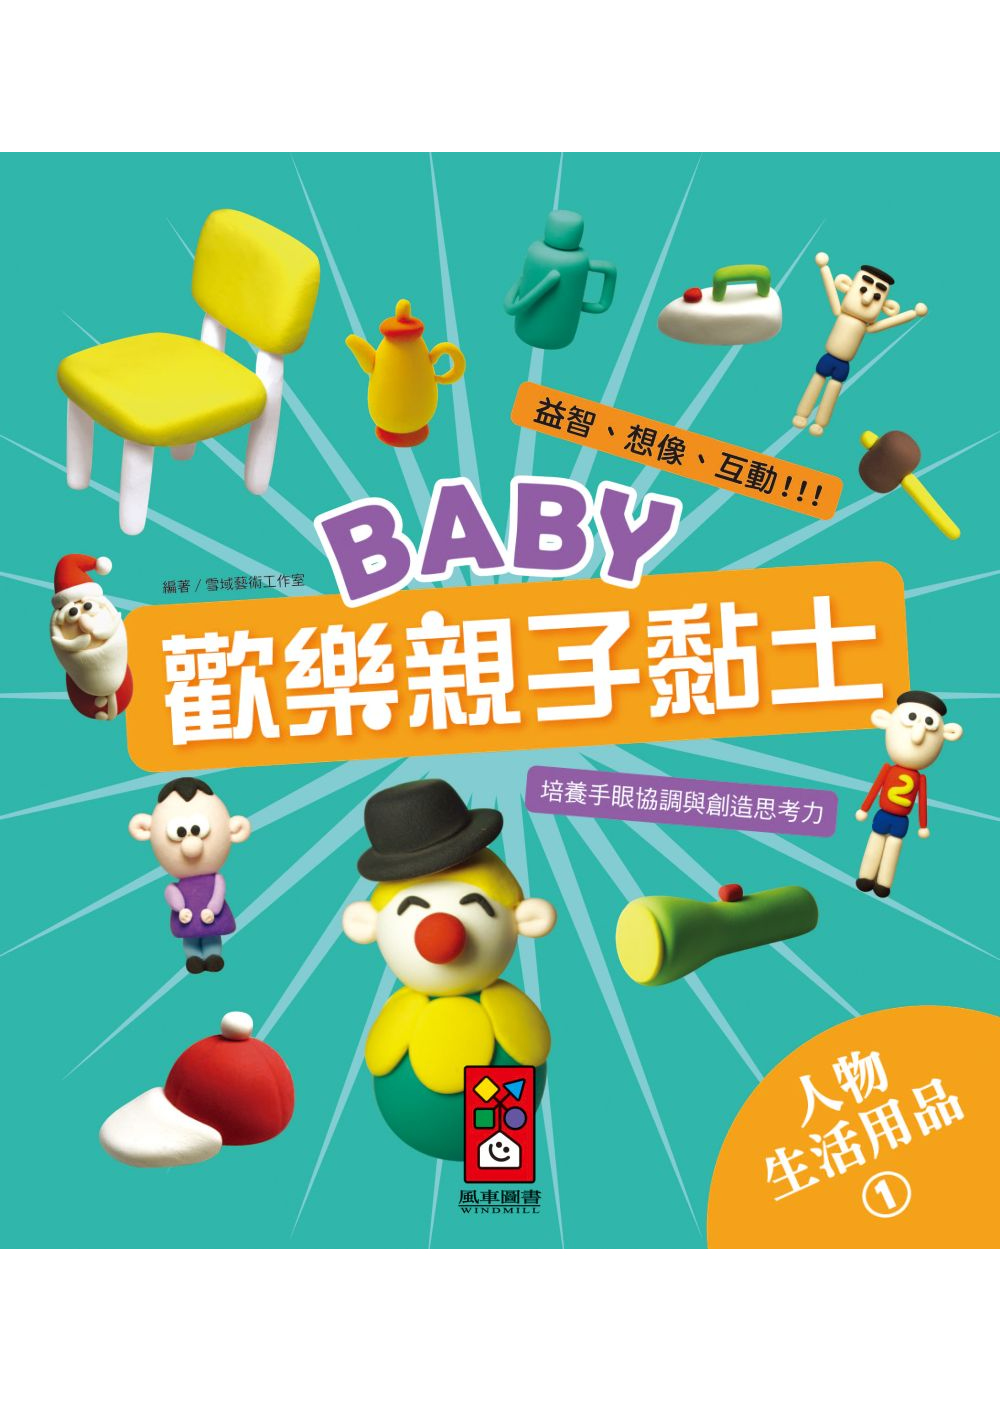 人物、生活用品1：Baby歡樂親子黏土(限台灣)